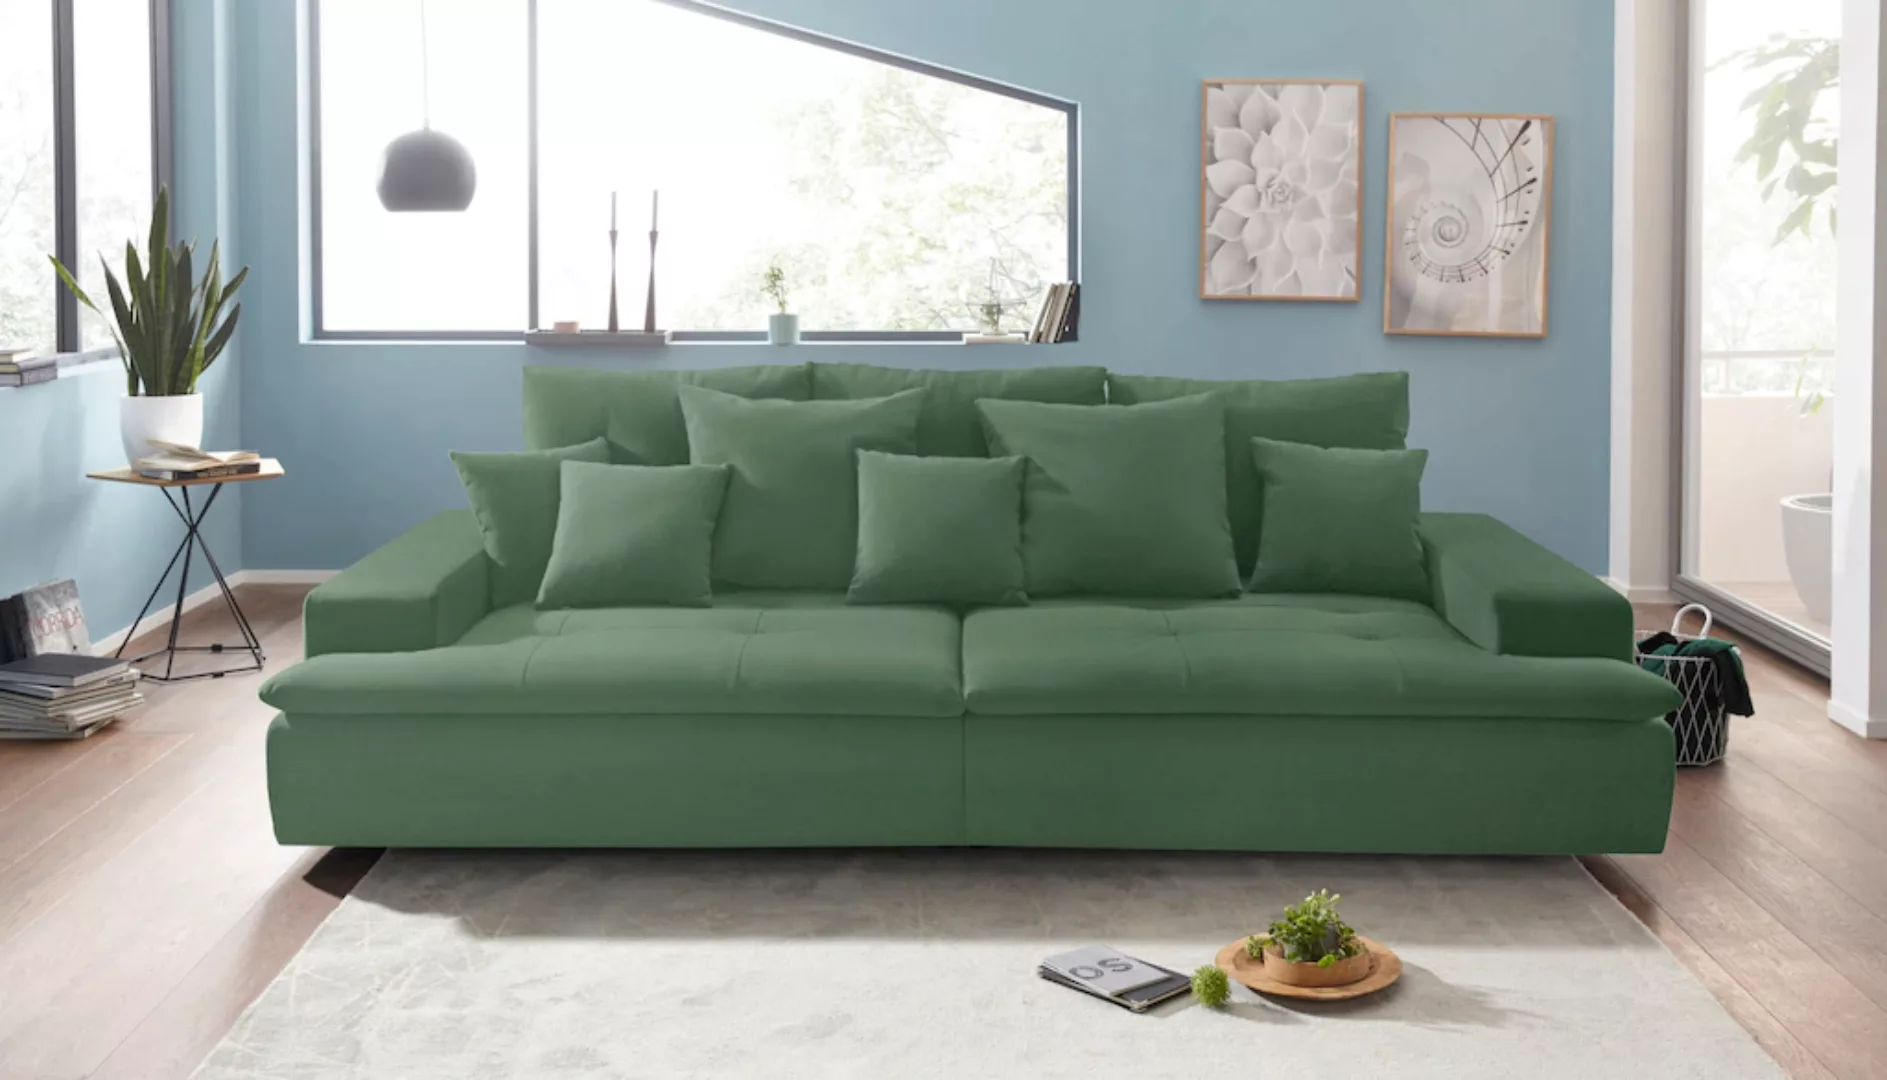 Mr. Couch Big-Sofa »Haiti« günstig online kaufen